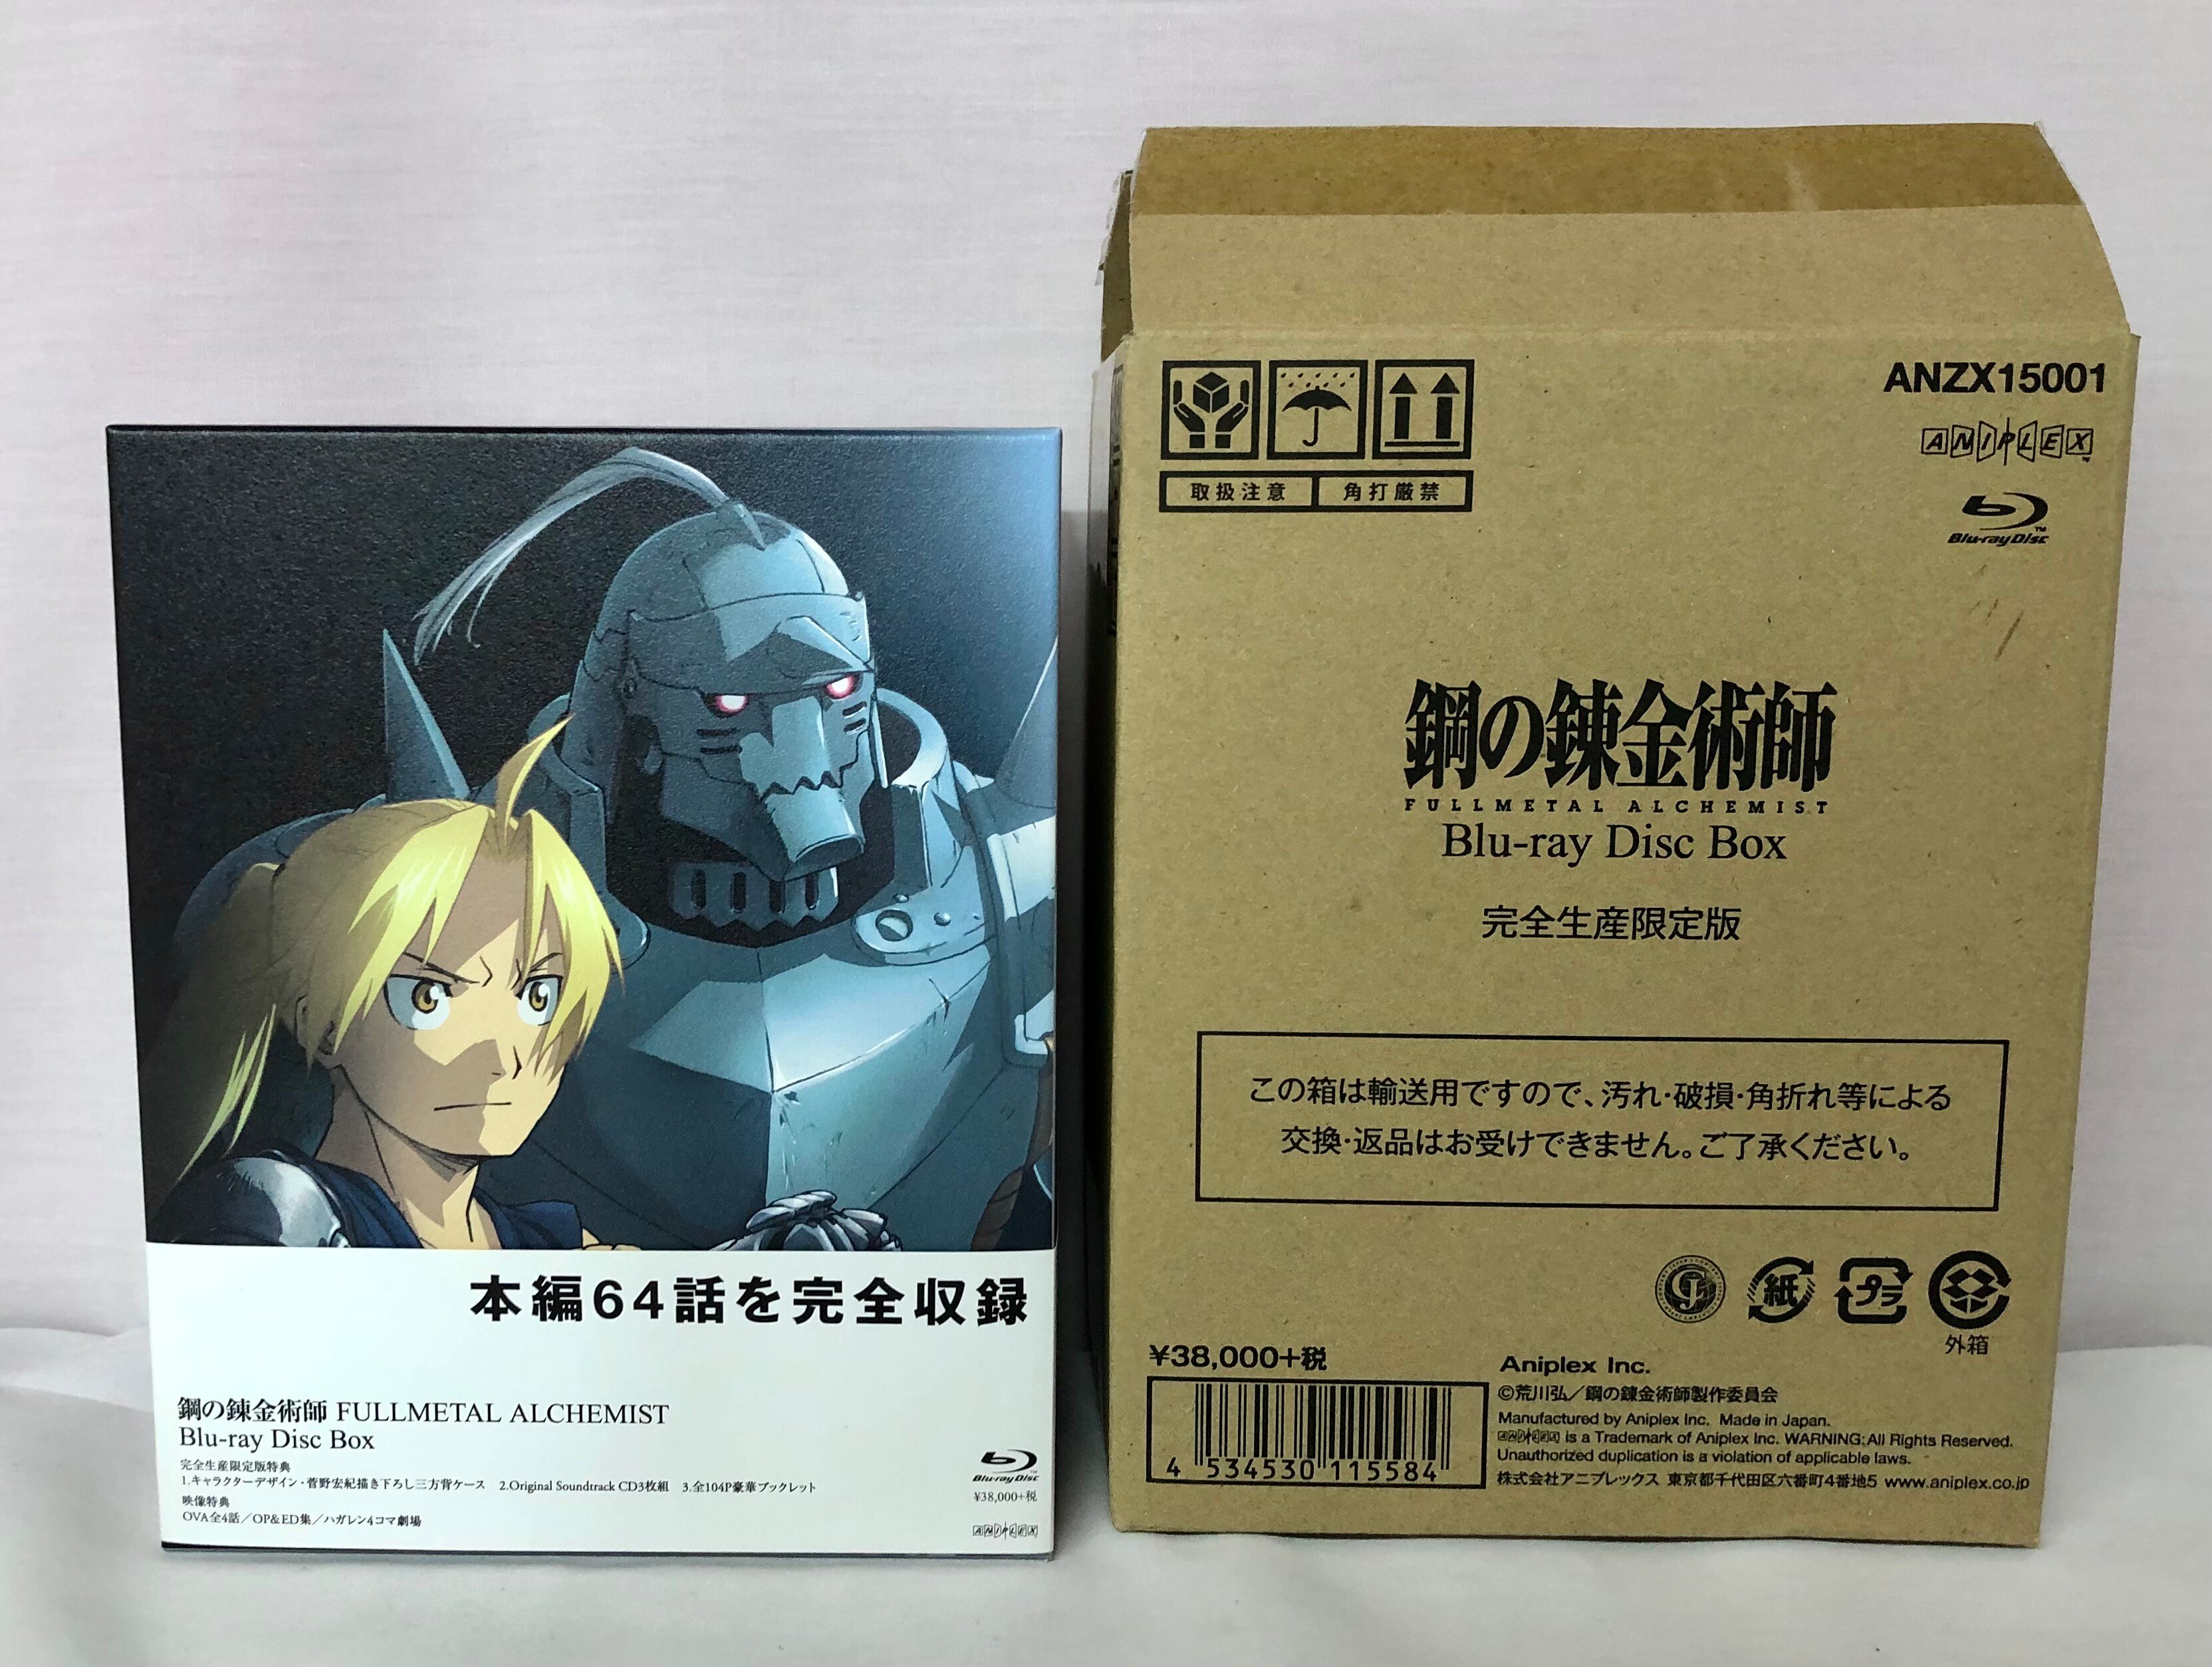 アニメBlu-ray 鋼の錬金術師 FULLMETAL ALCHEMIST Blu-ray Disc Box